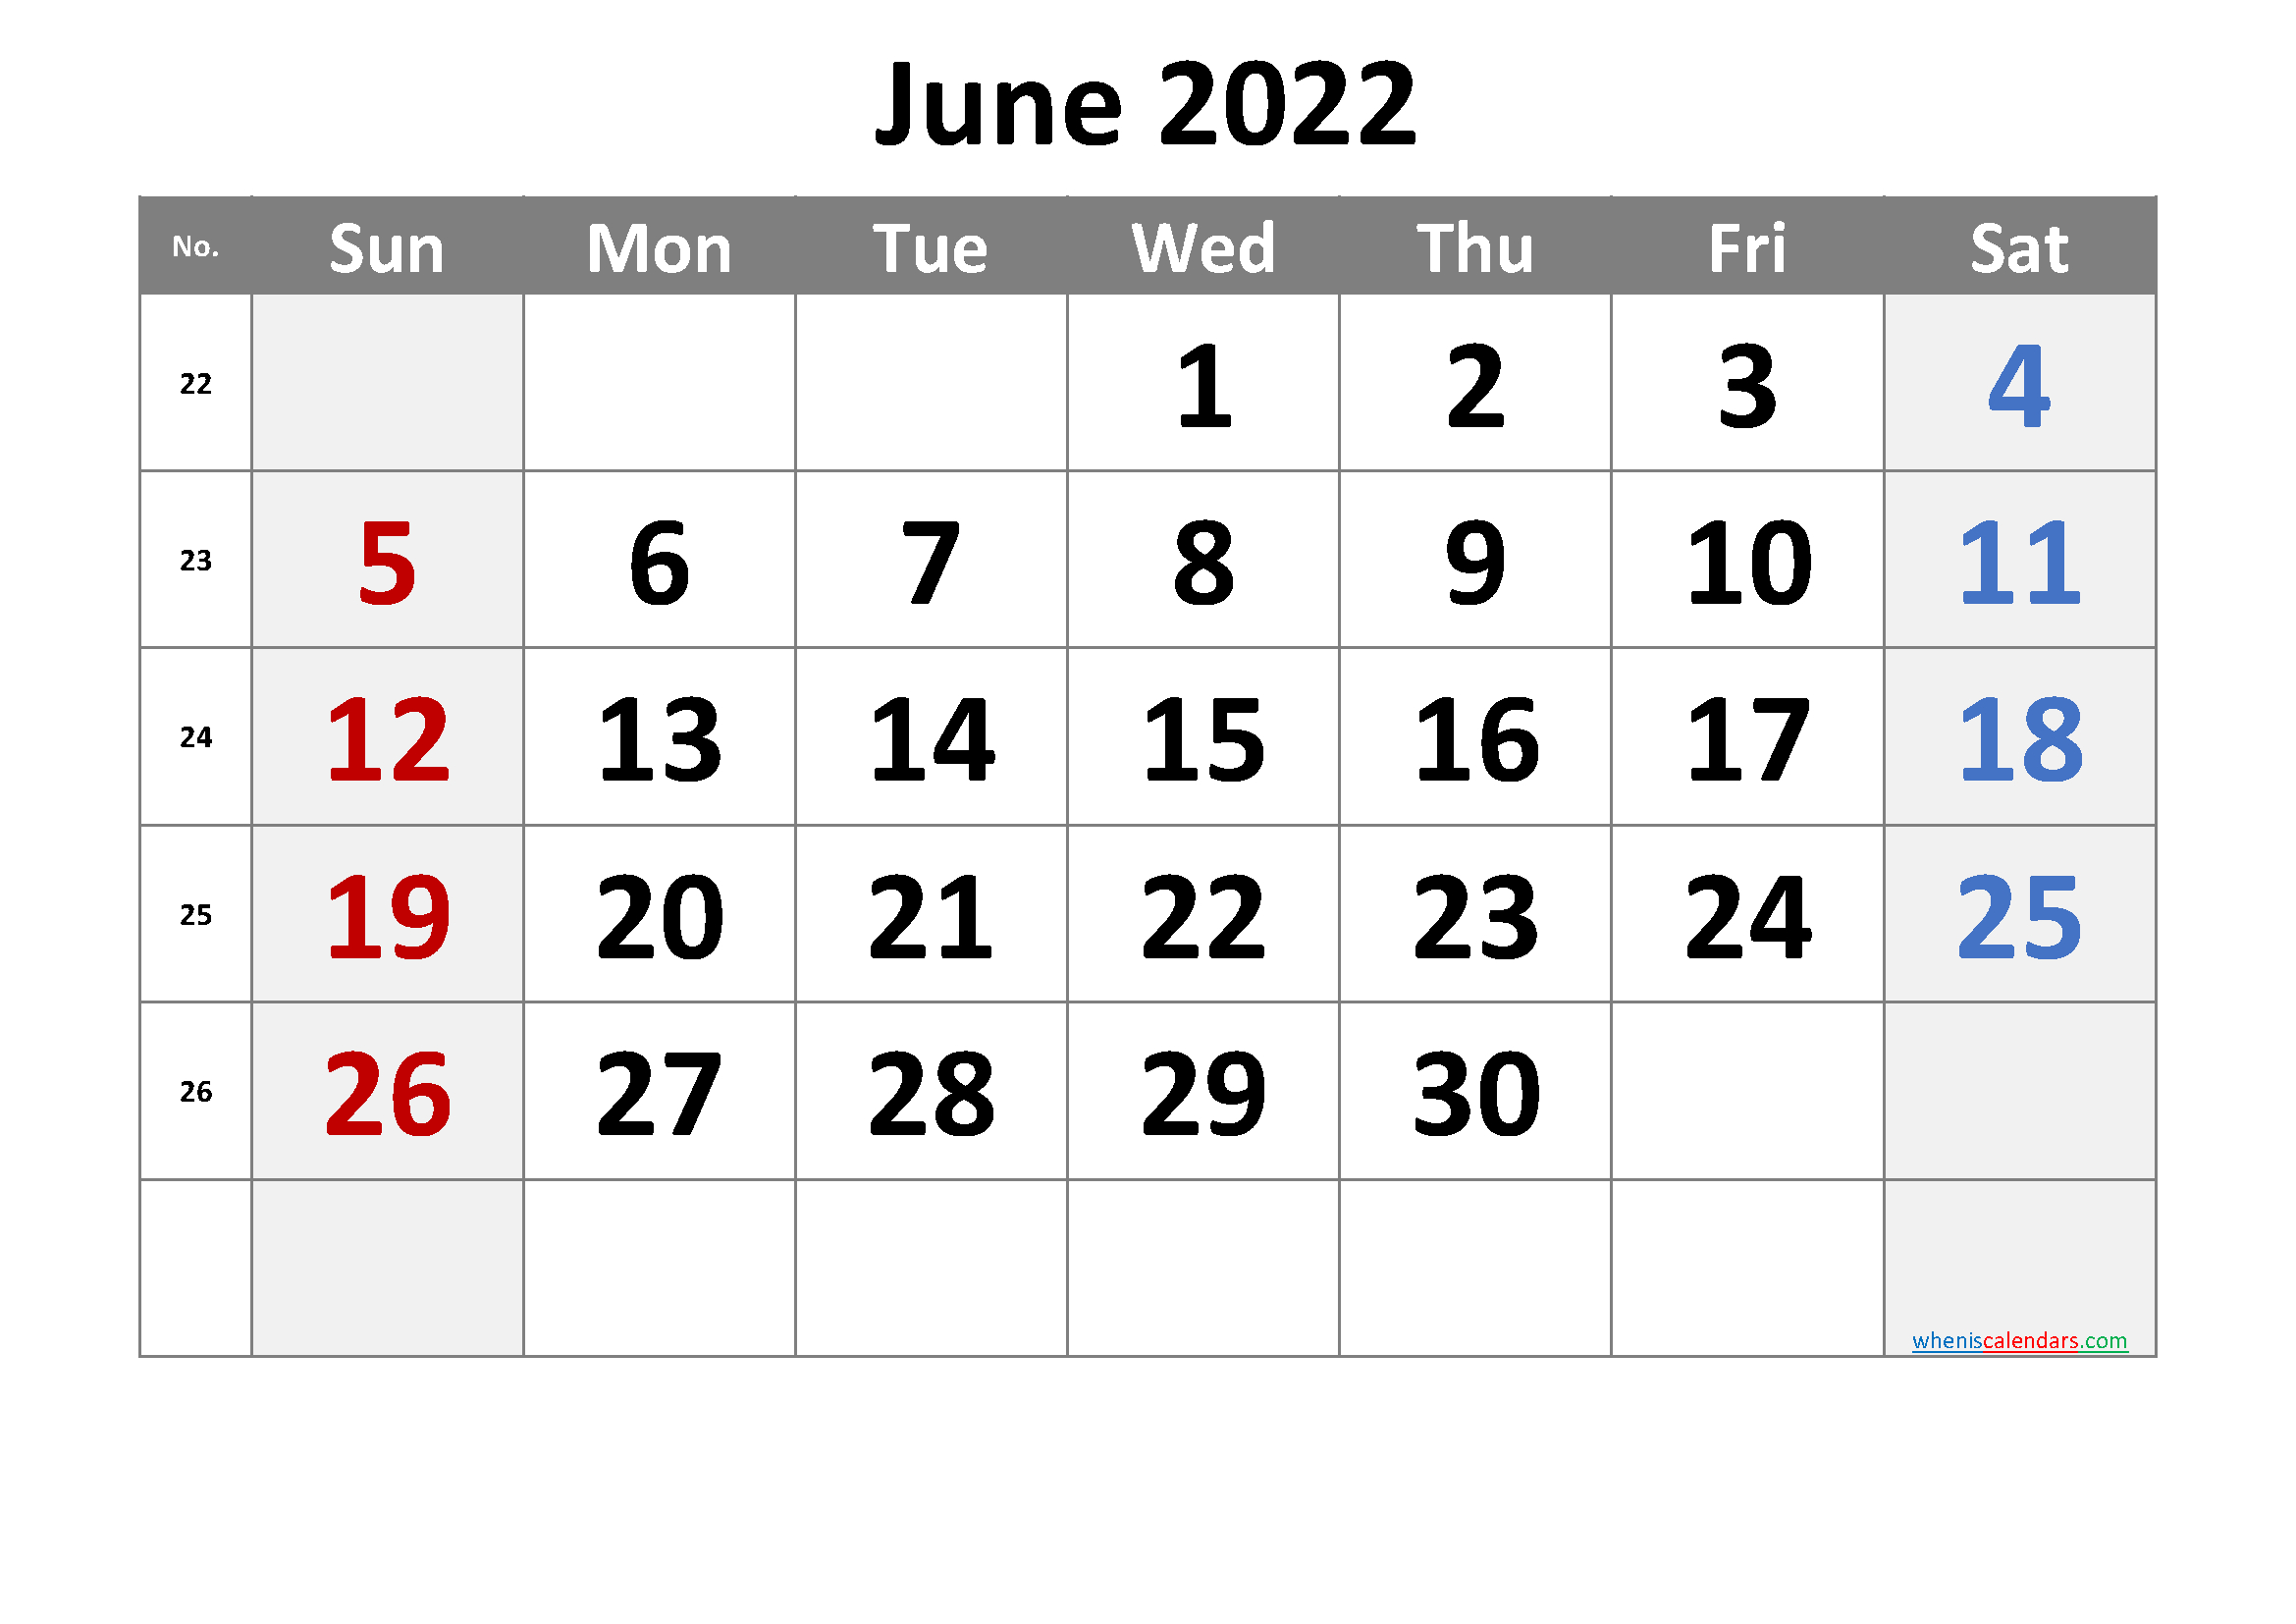 June 2022 Printable Calendar [Free Premium]  Free Printable Calendar 2022 June